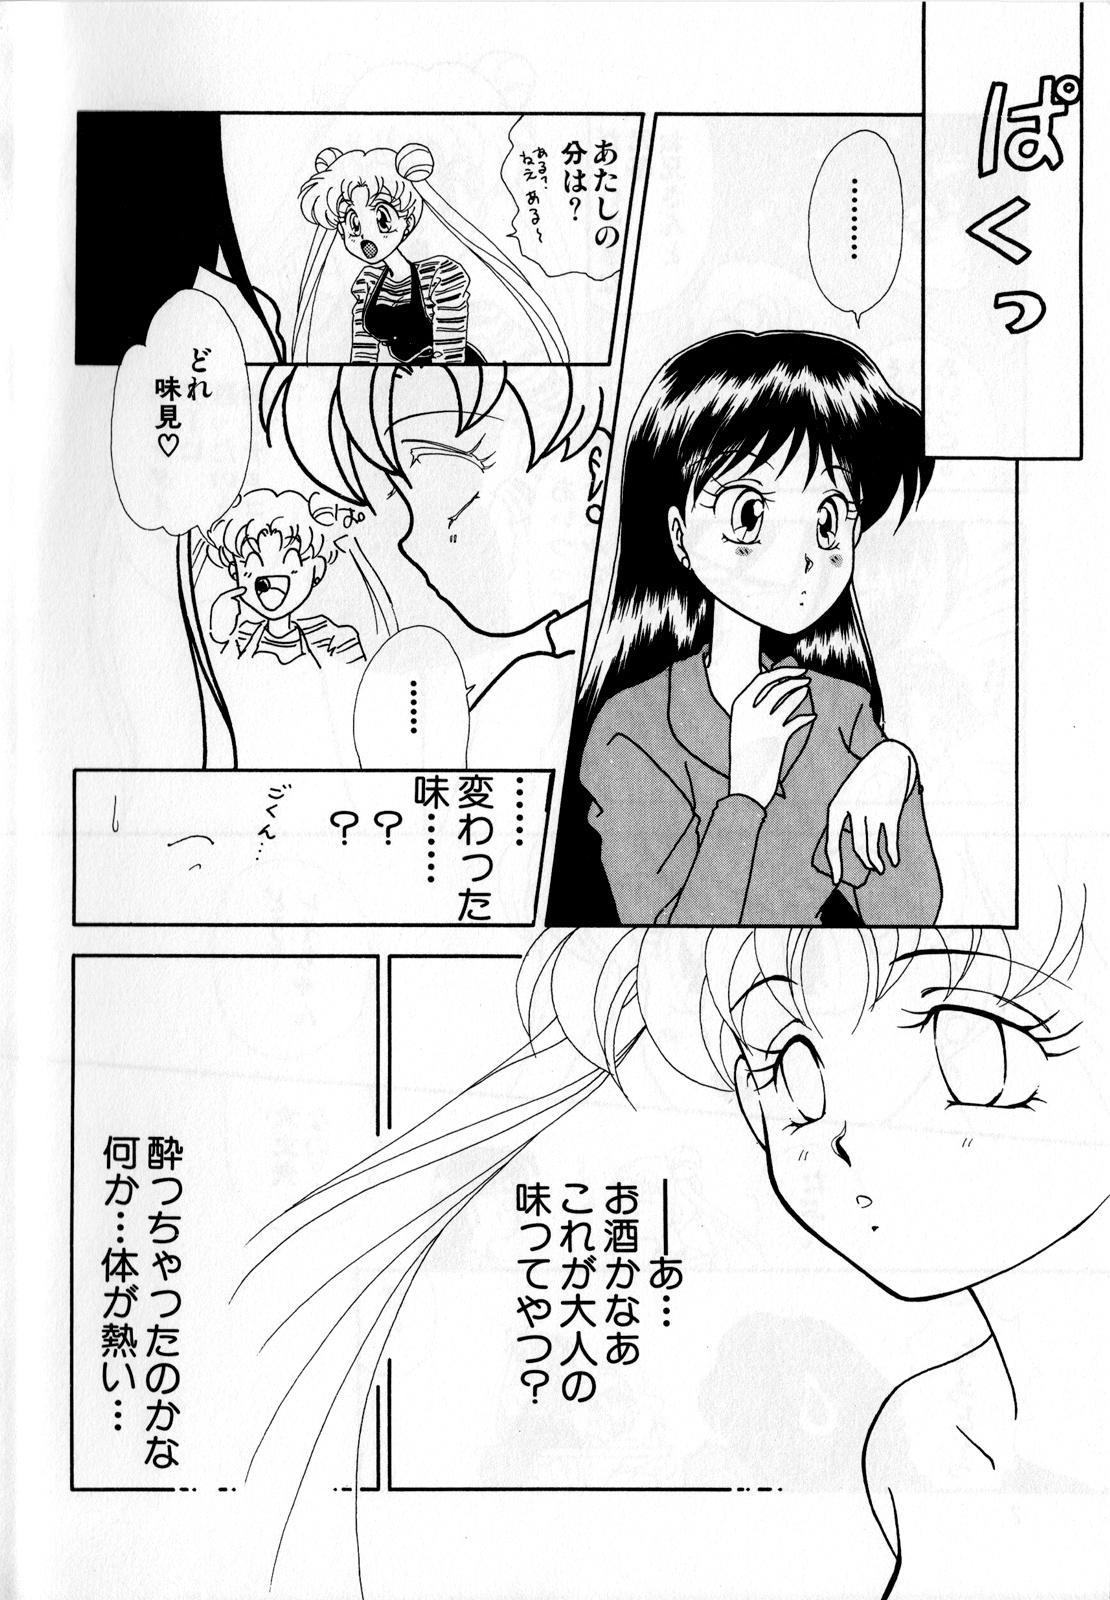 Jap Lunatic Party 3 - Sailor moon Master - Page 9